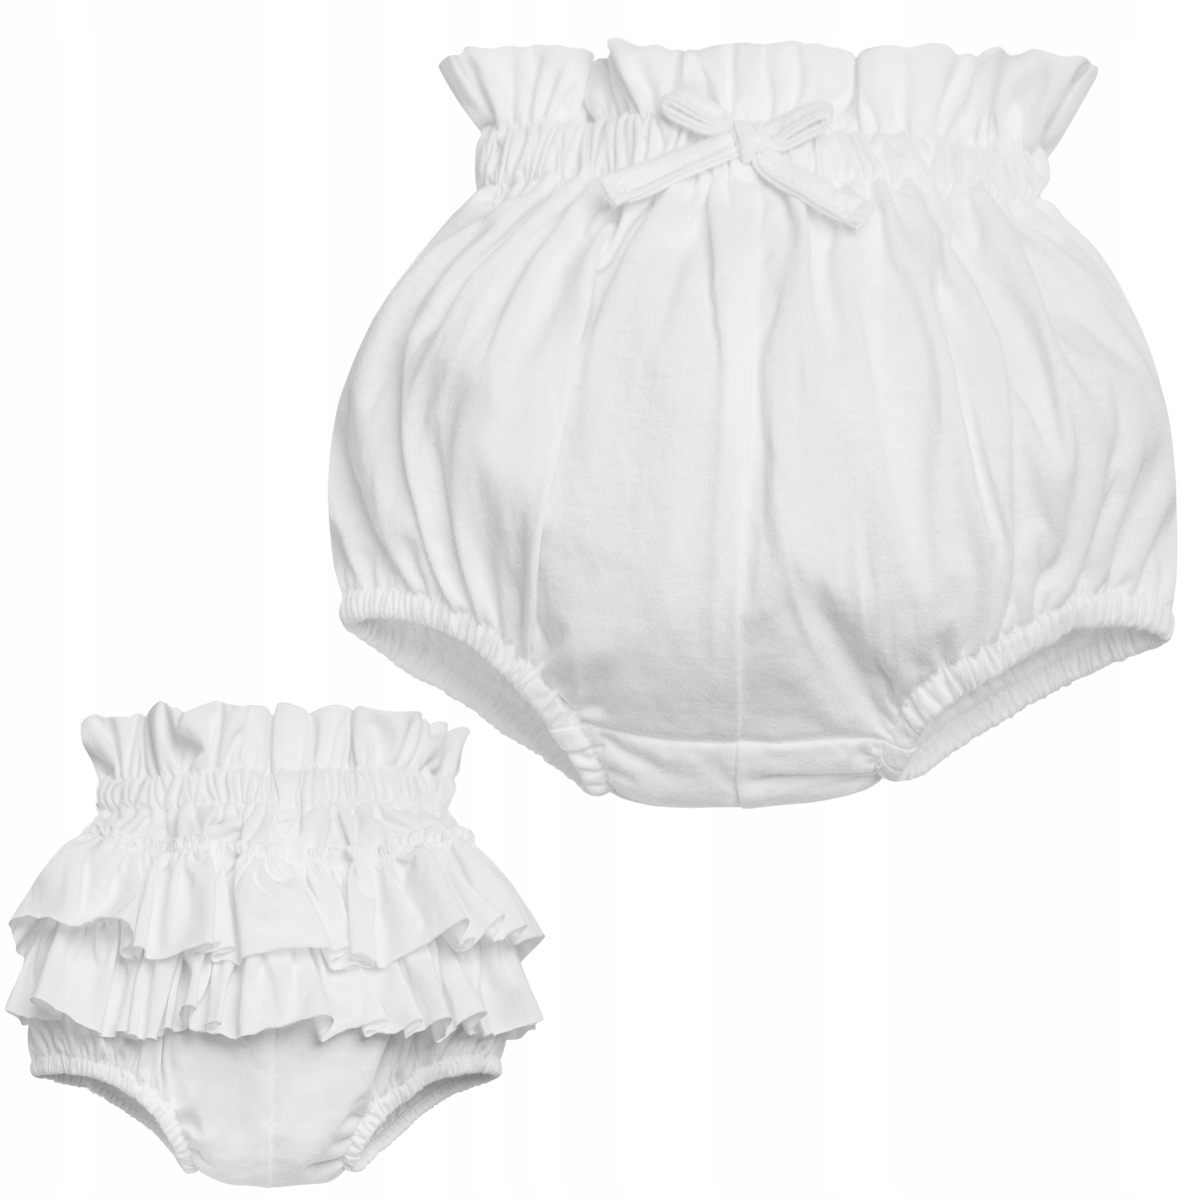 białe majtki dla dziecka do zasłonięcia pieluchy pod sukienka